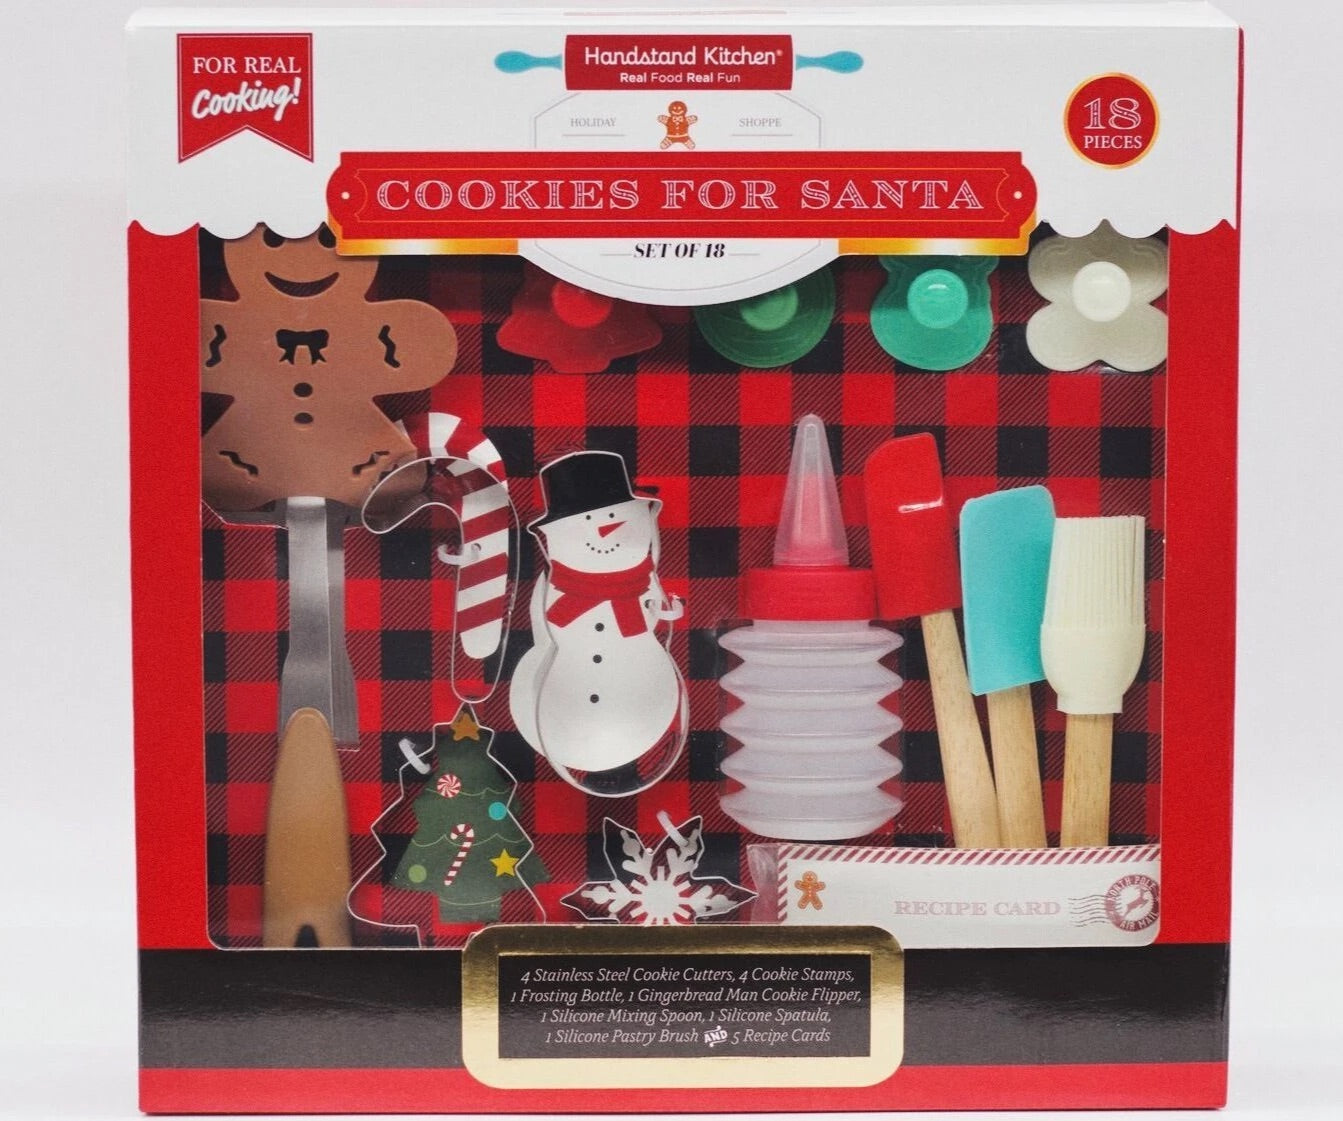 Handstand Kitchen Cookies for Santa